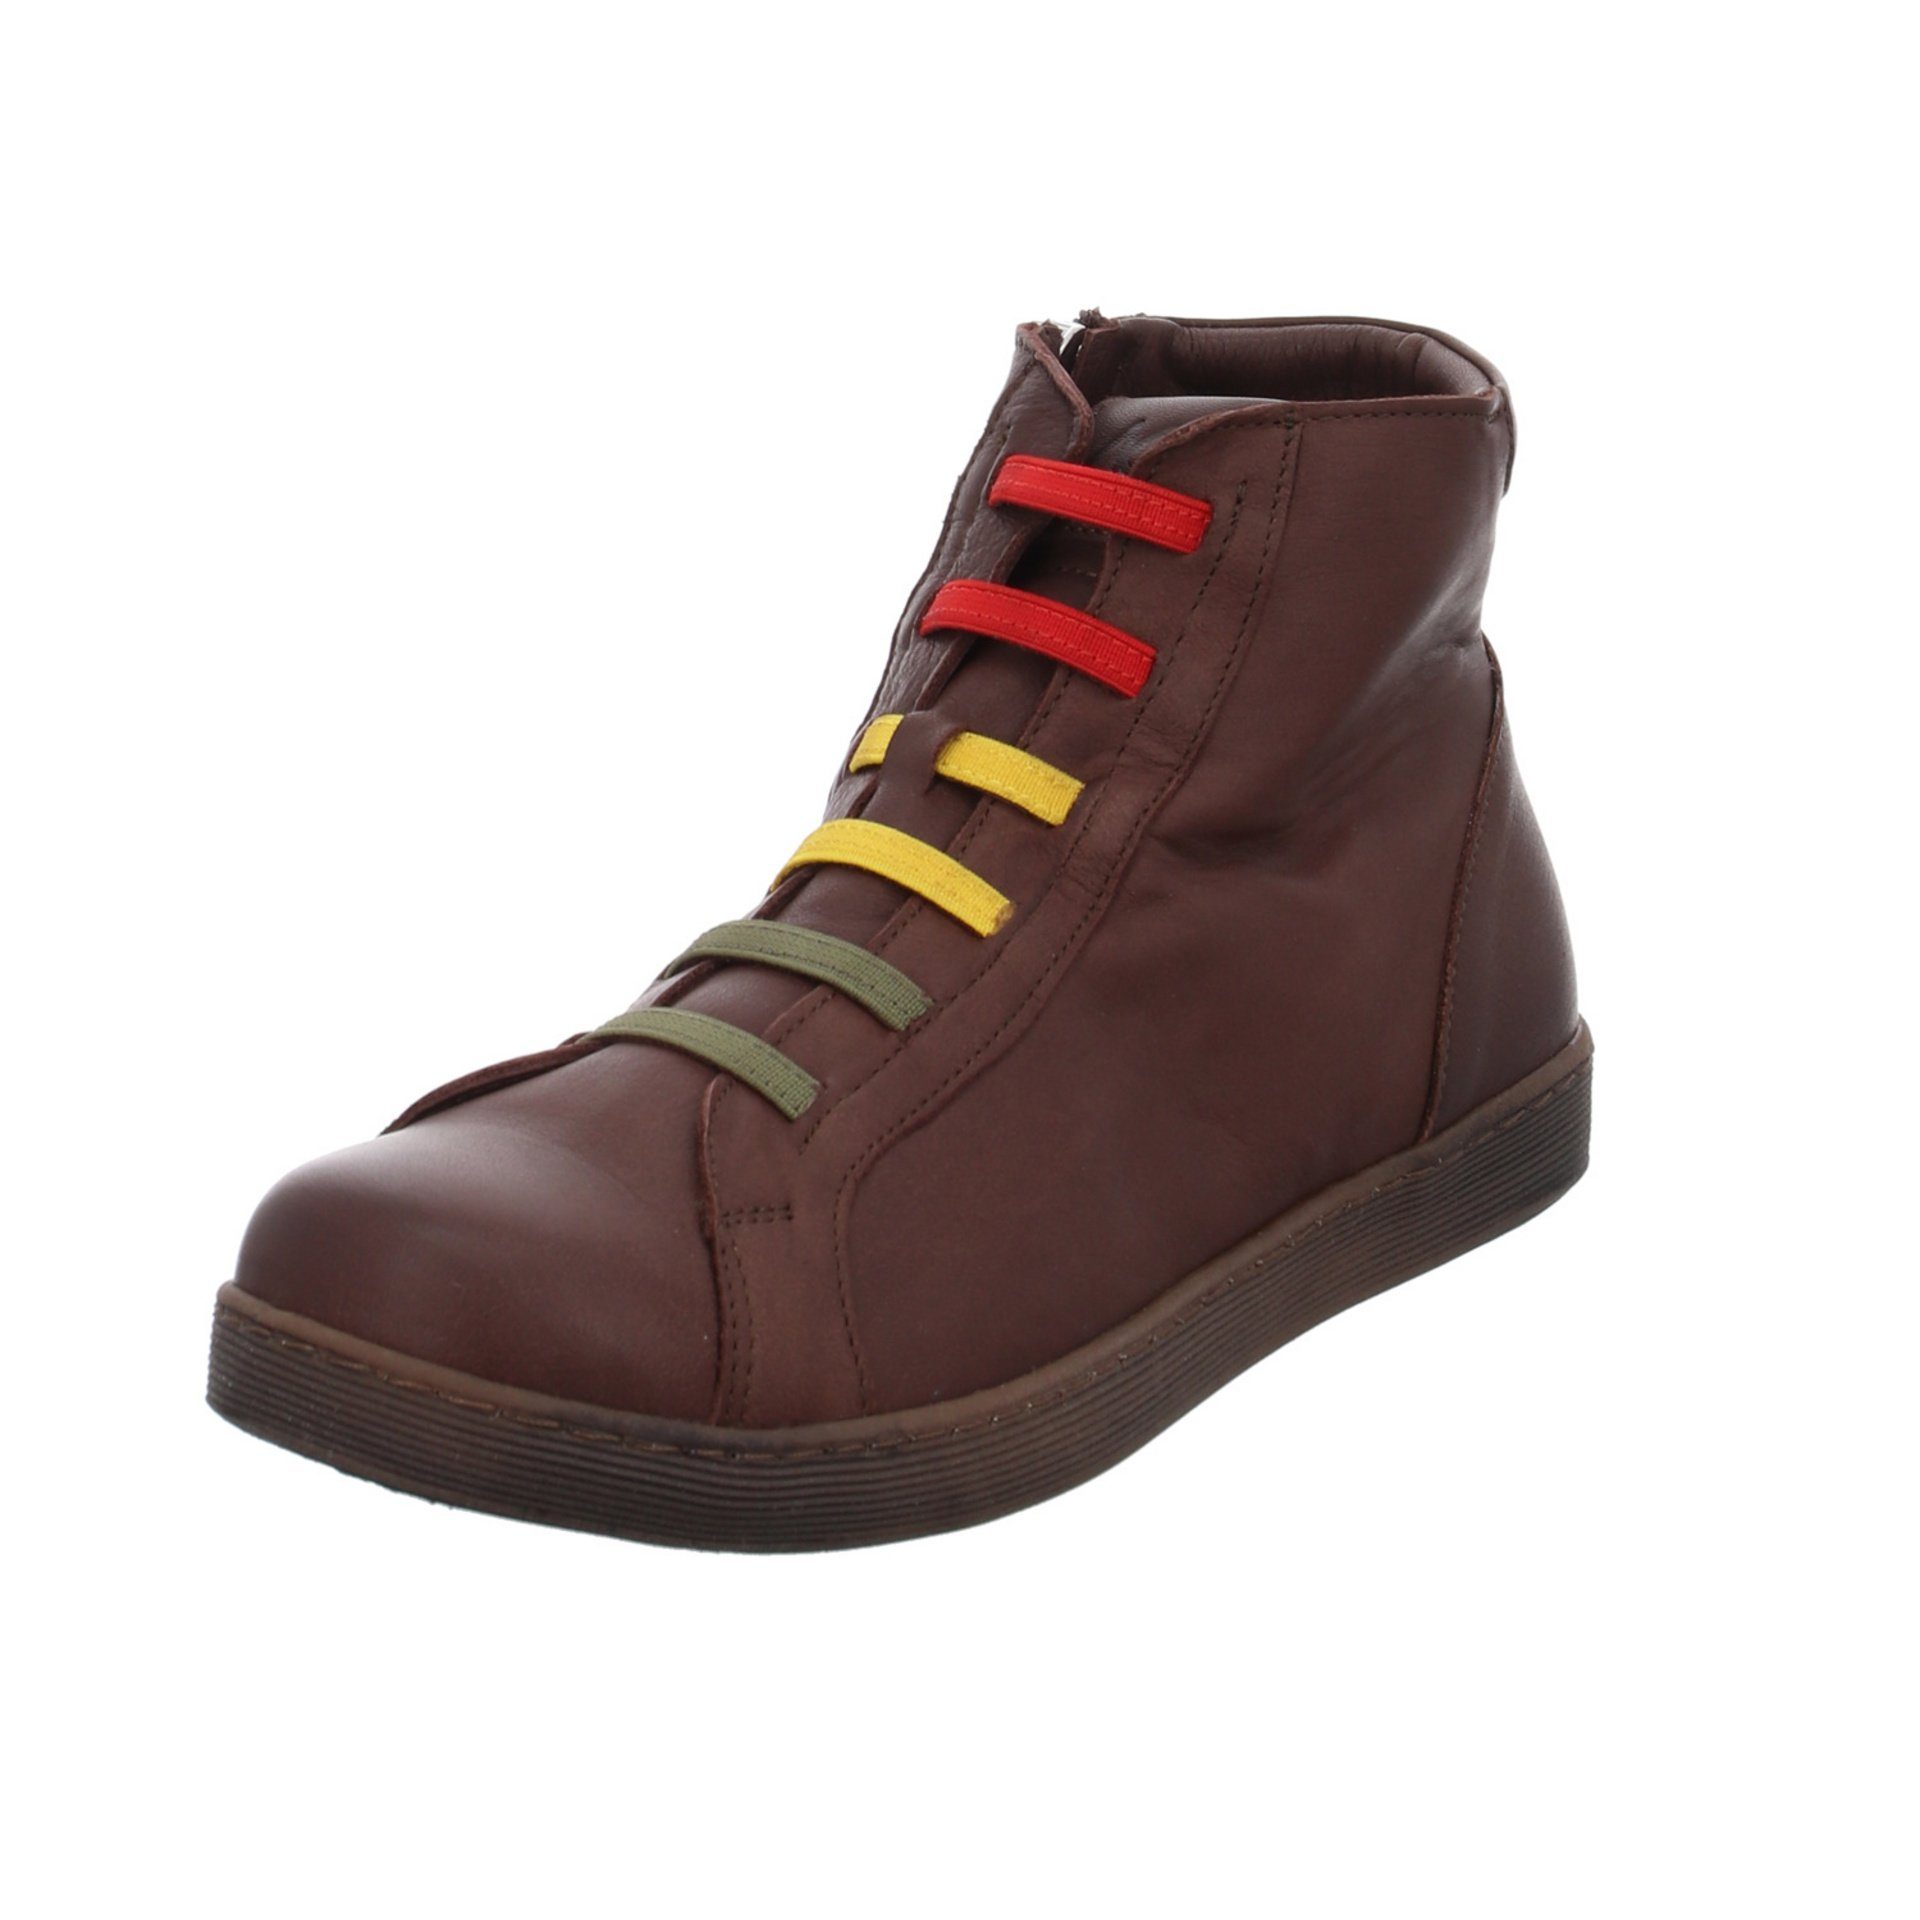 Andrea Conti »Damen Stiefeletten Schuhe Boots Elegant Freizeit« Stiefelette  online kaufen | OTTO